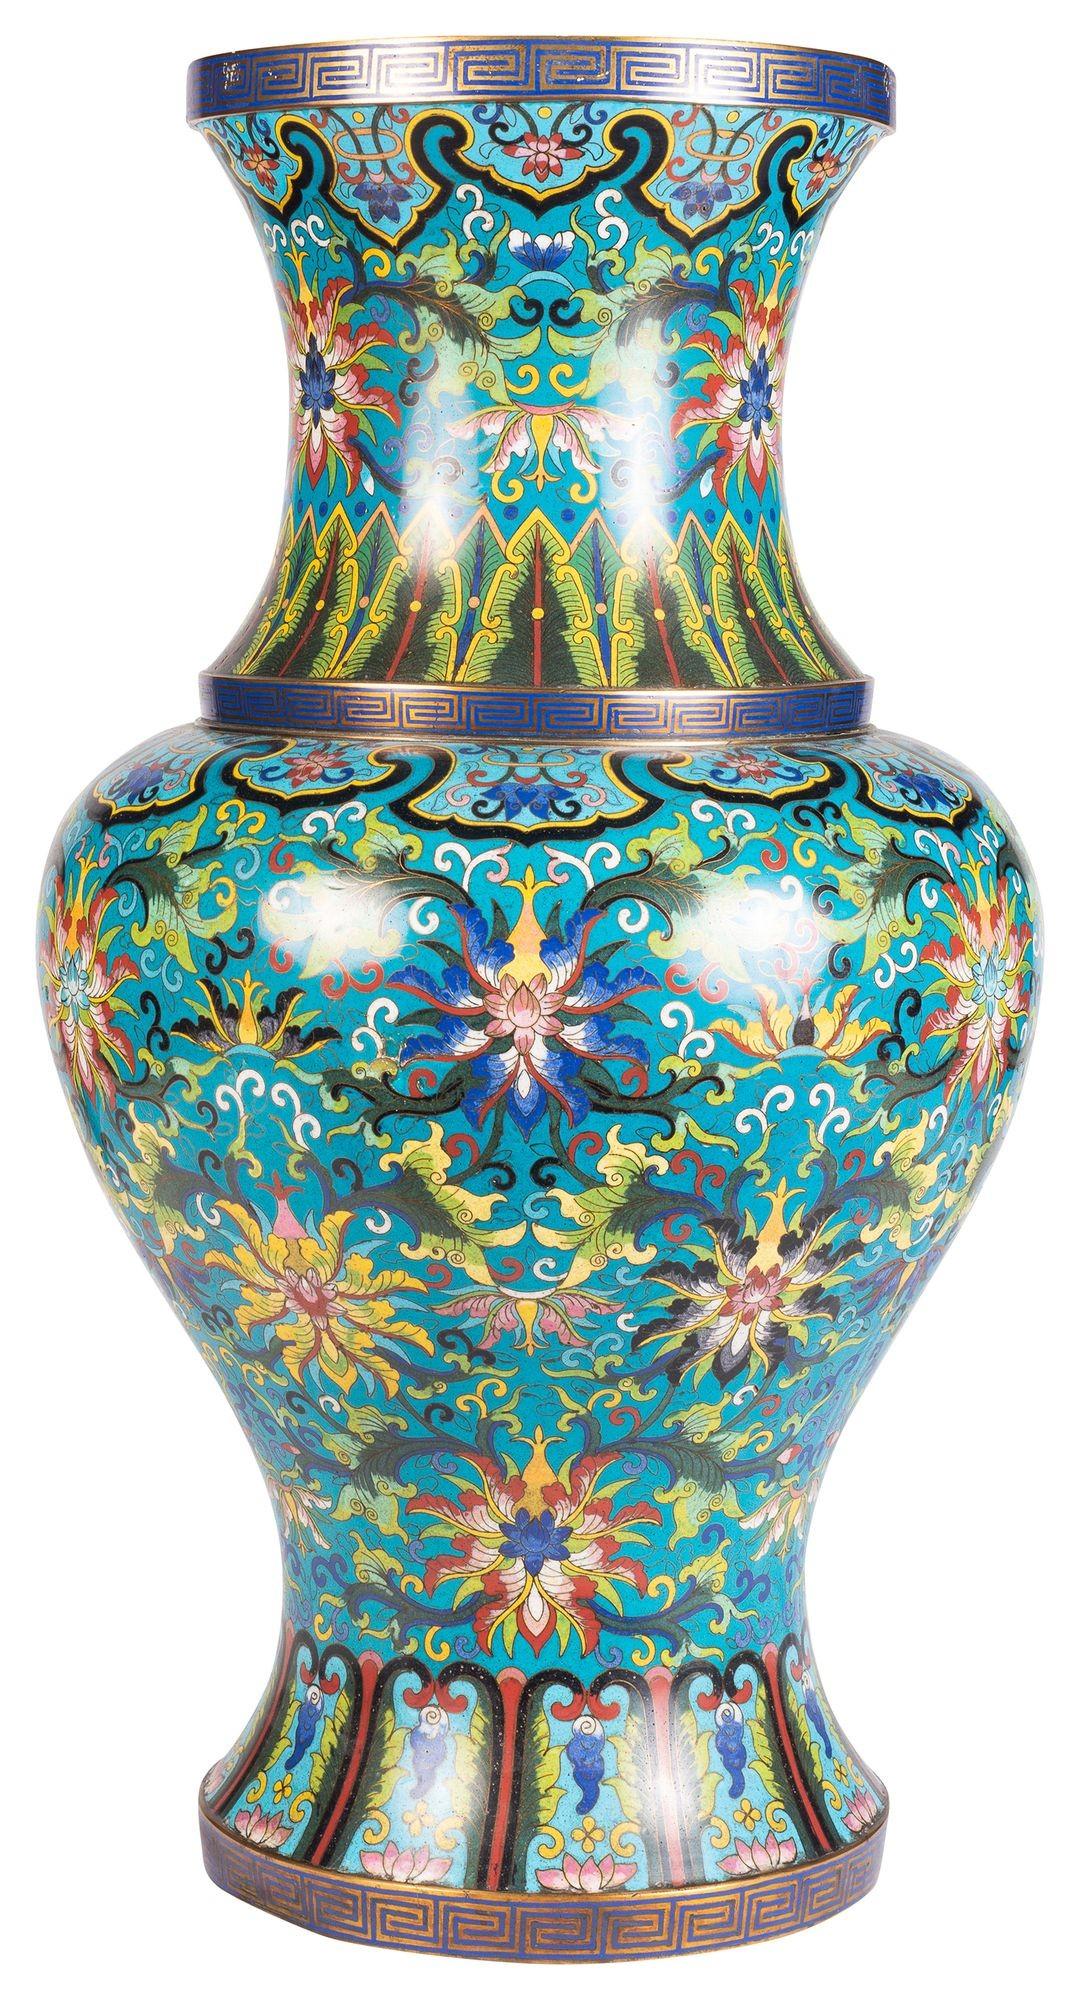 Un vase / lampe cloisonné chinois du 19ème siècle de très bonne qualité. Il présente de magnifiques couleurs vives, des motifs classiques et des décorations florales.
Nous pouvons transformer le vase en lampe.


Lot 74. 62166. UNKZZ